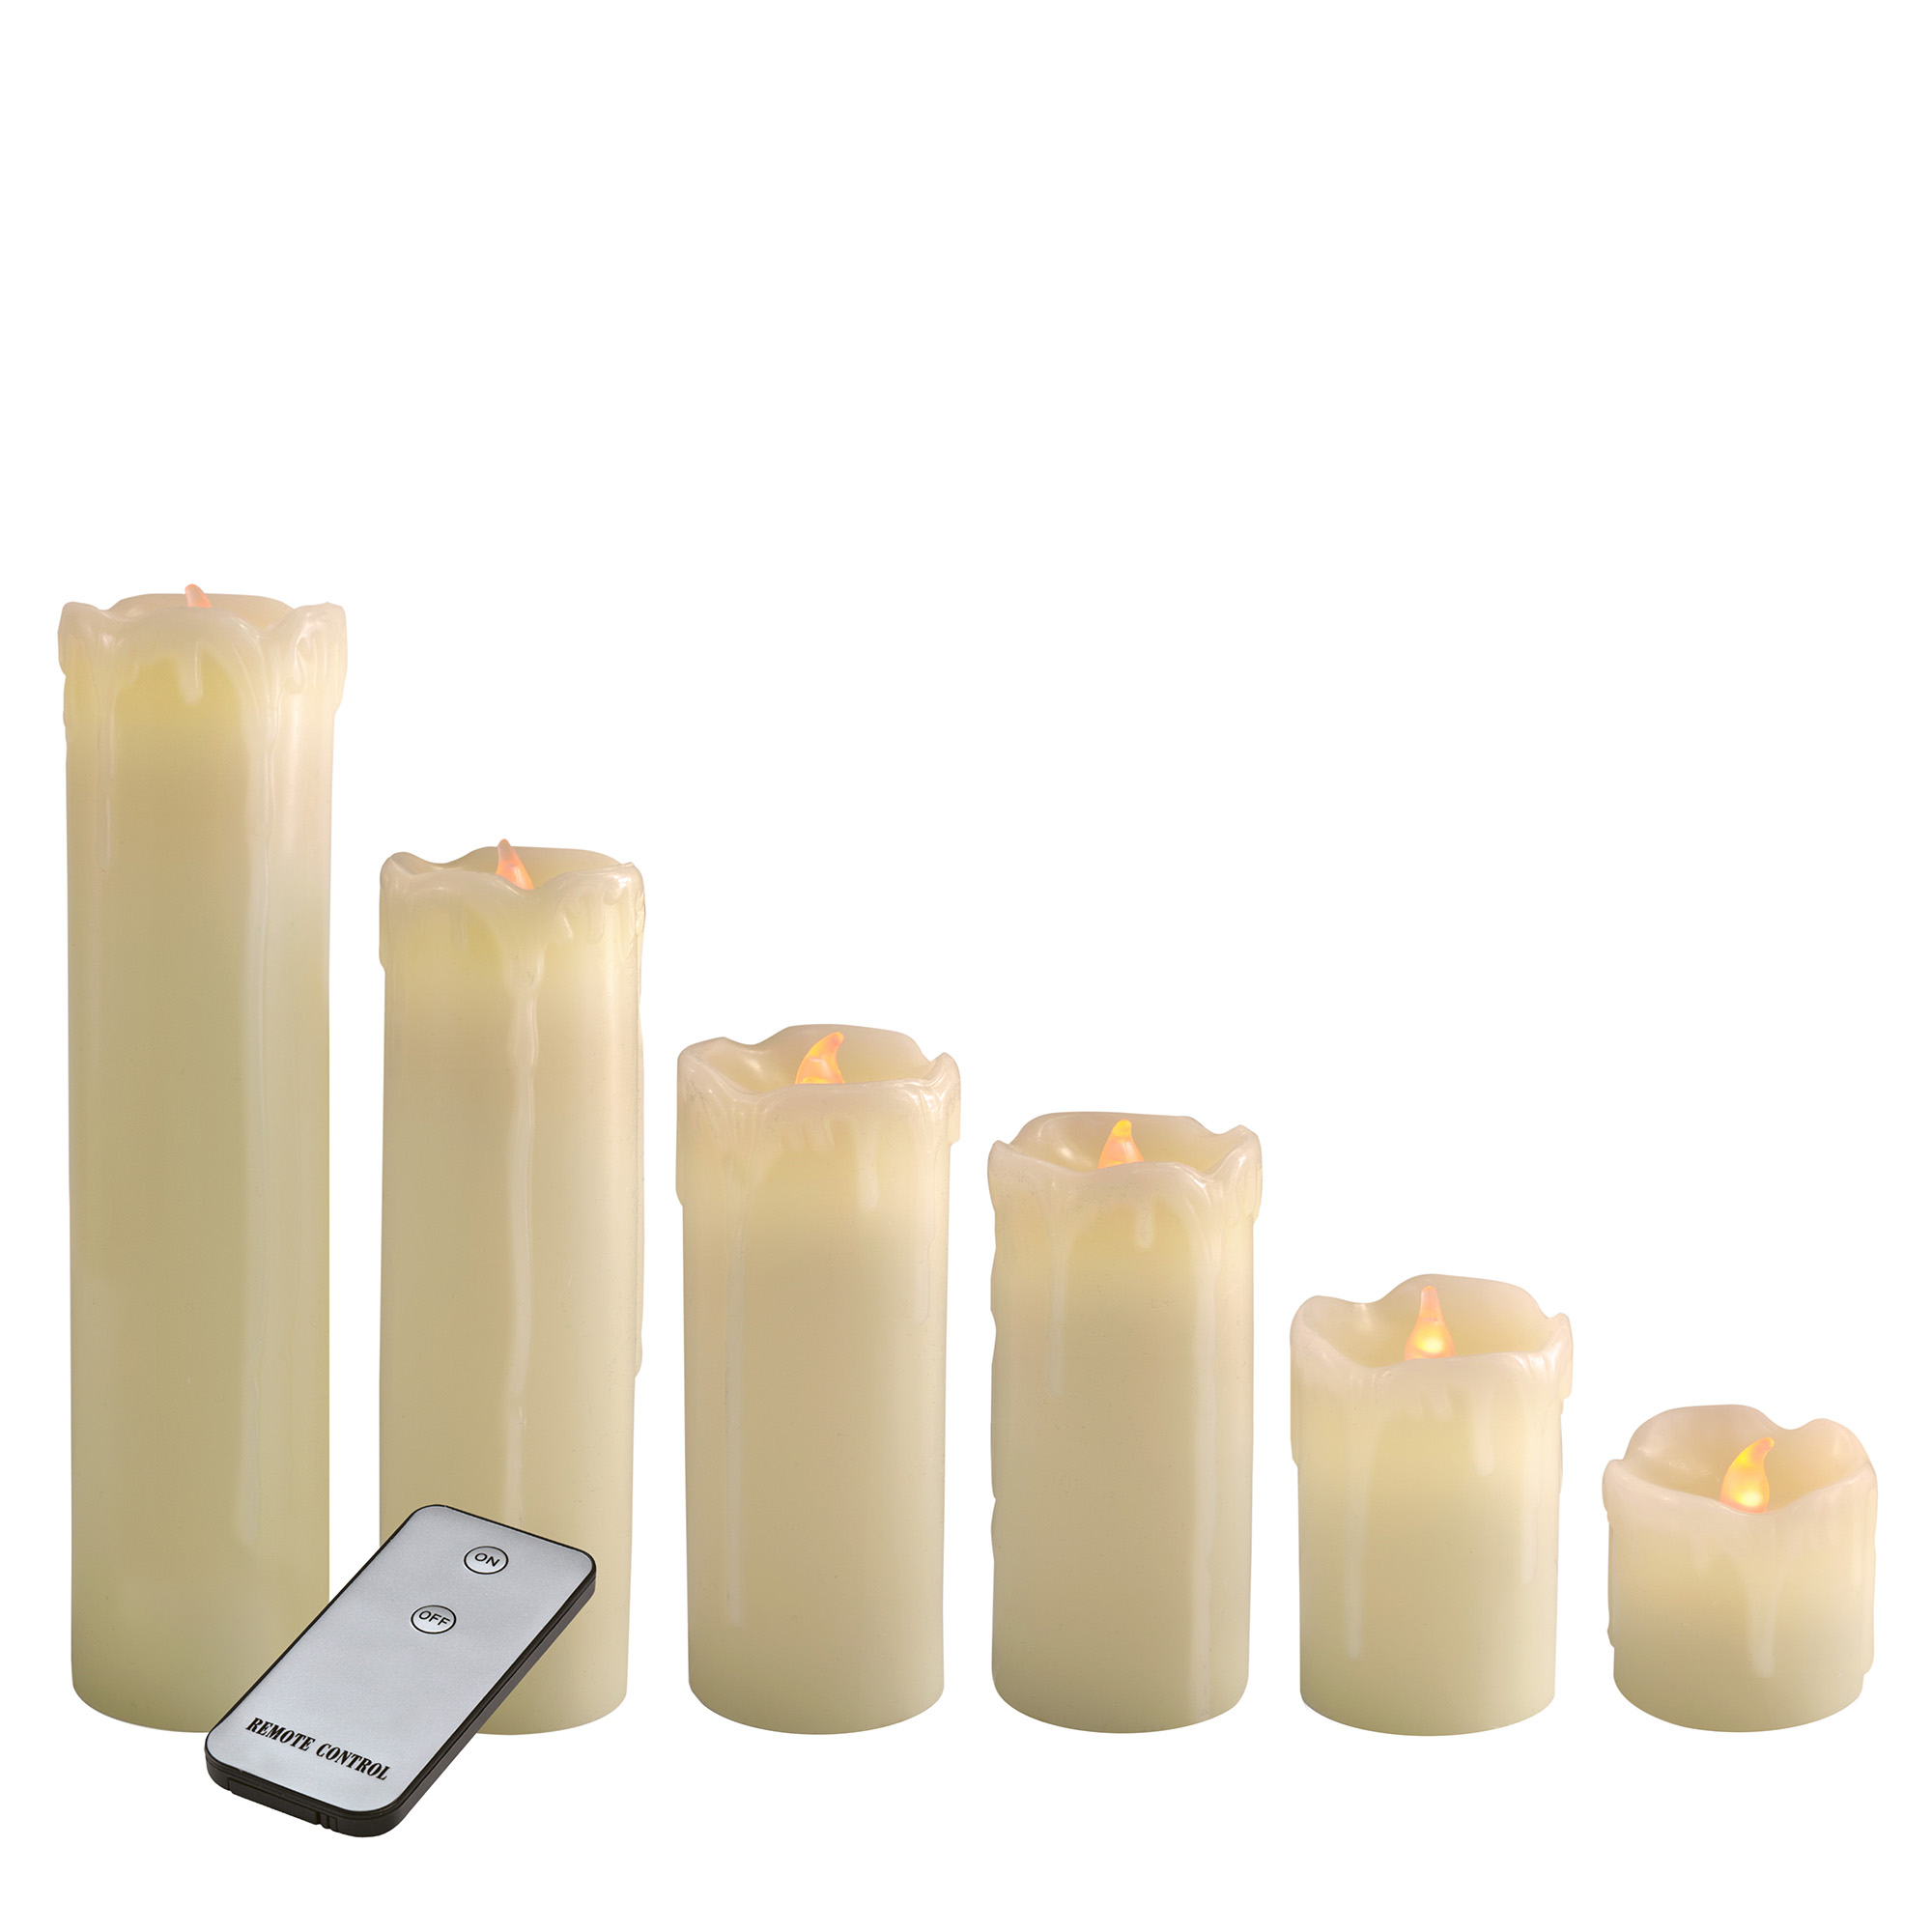 X4-LIFE 6 LED Kerzen mit Wachstropfen, 6er-Set, Fernbedienung, LED Echtwachskerzen, mit Batterien, warmweißes Kerzenlicht, täuschend echt flackernde Flamme, 5cm 8cm 10cm 13cm 18cm 23cm, Farbe Creme, dekorativ